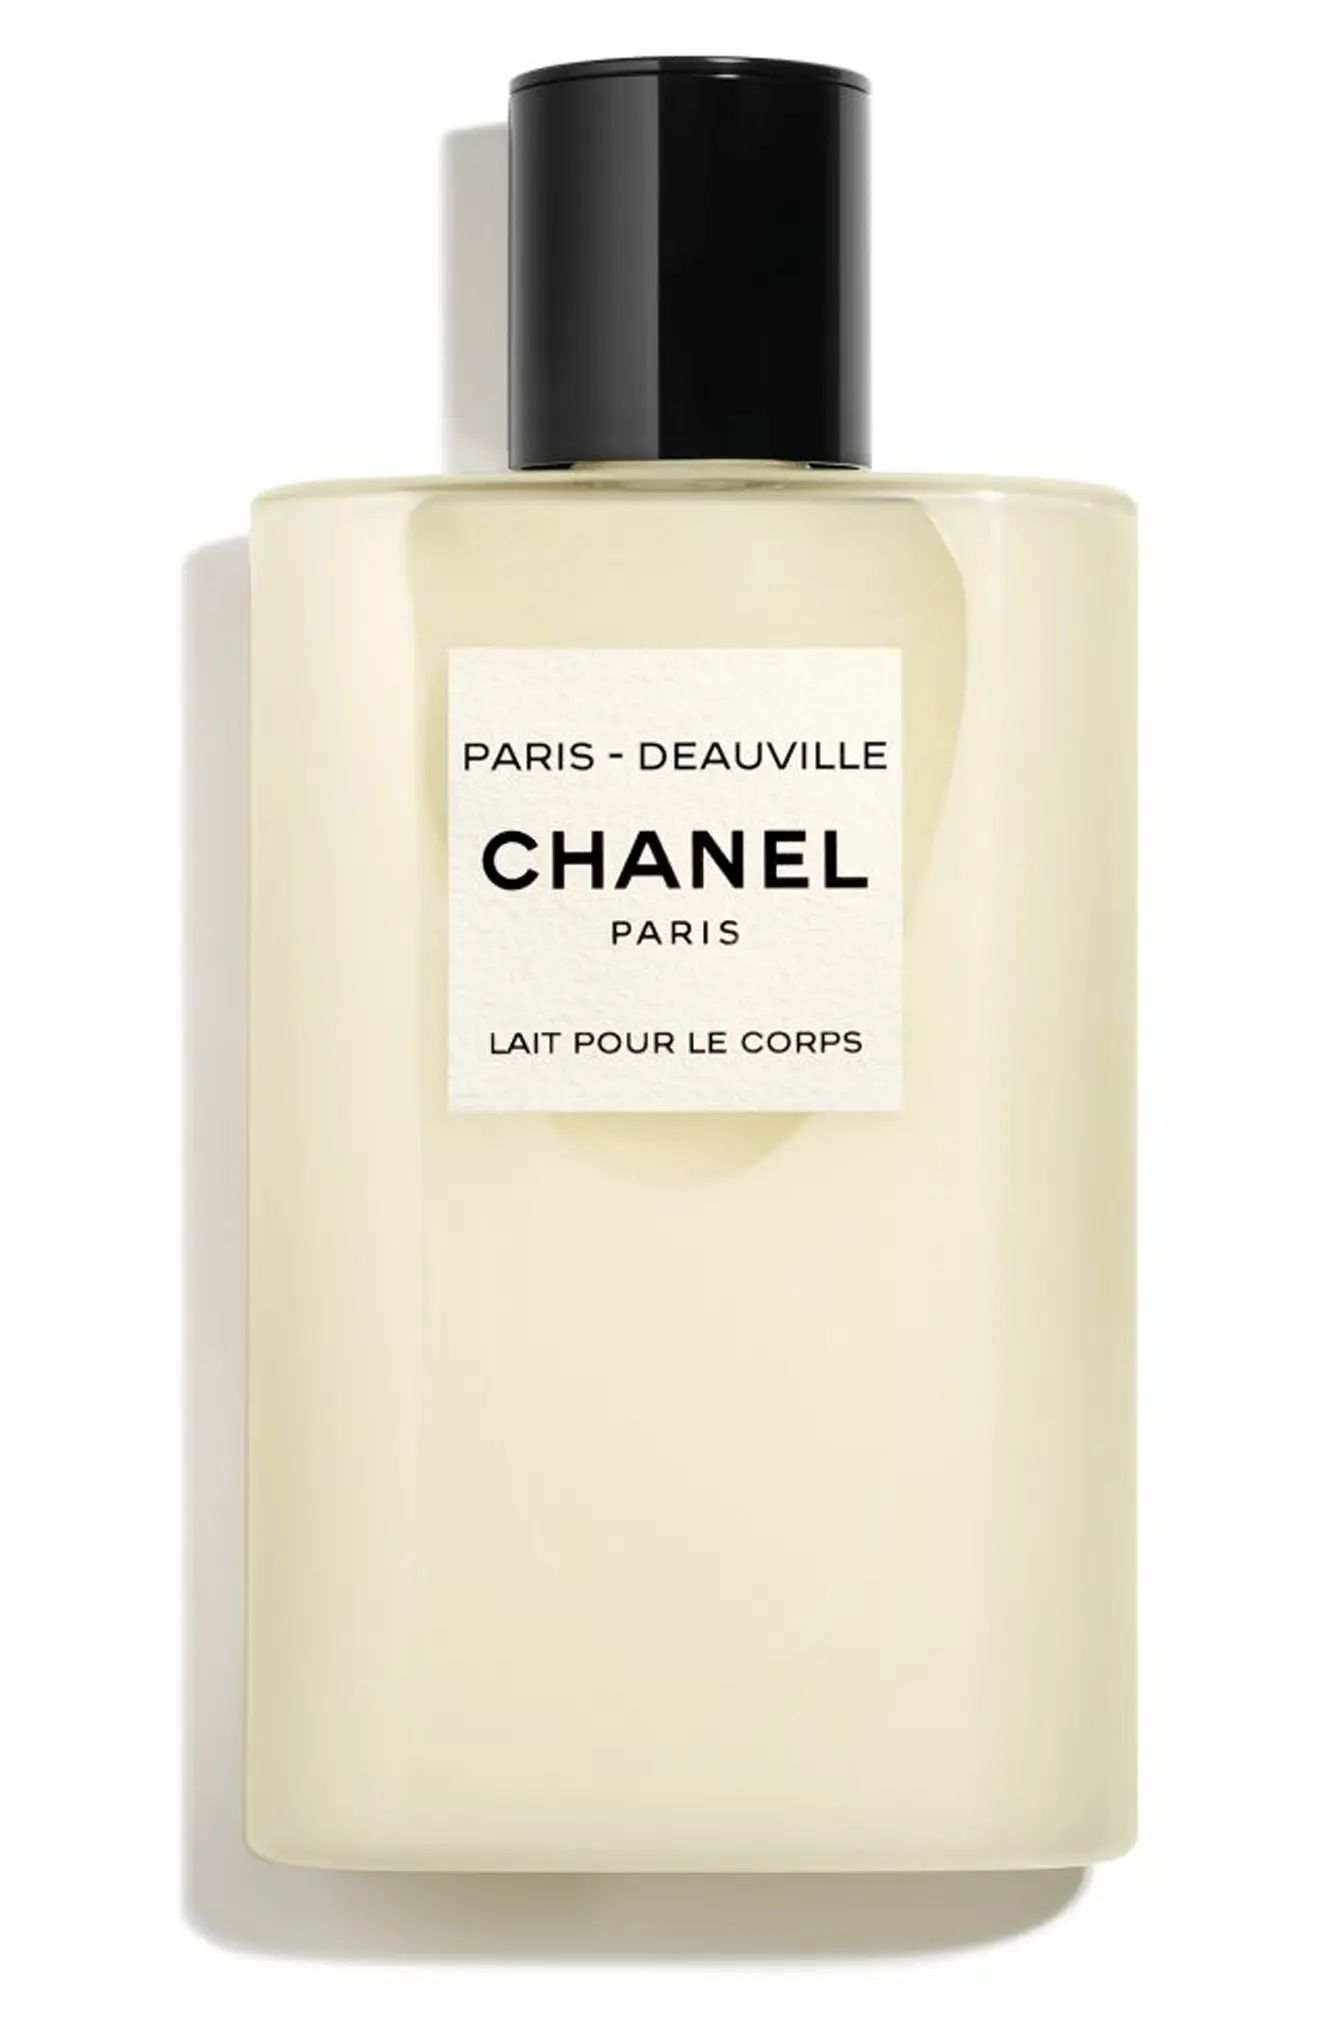 CHANEL LES EAUX DE CHANEL PARIS-DEAUVILLE Perfumed Body Lotion (Nordstrom Exclusive) | Nordstrom